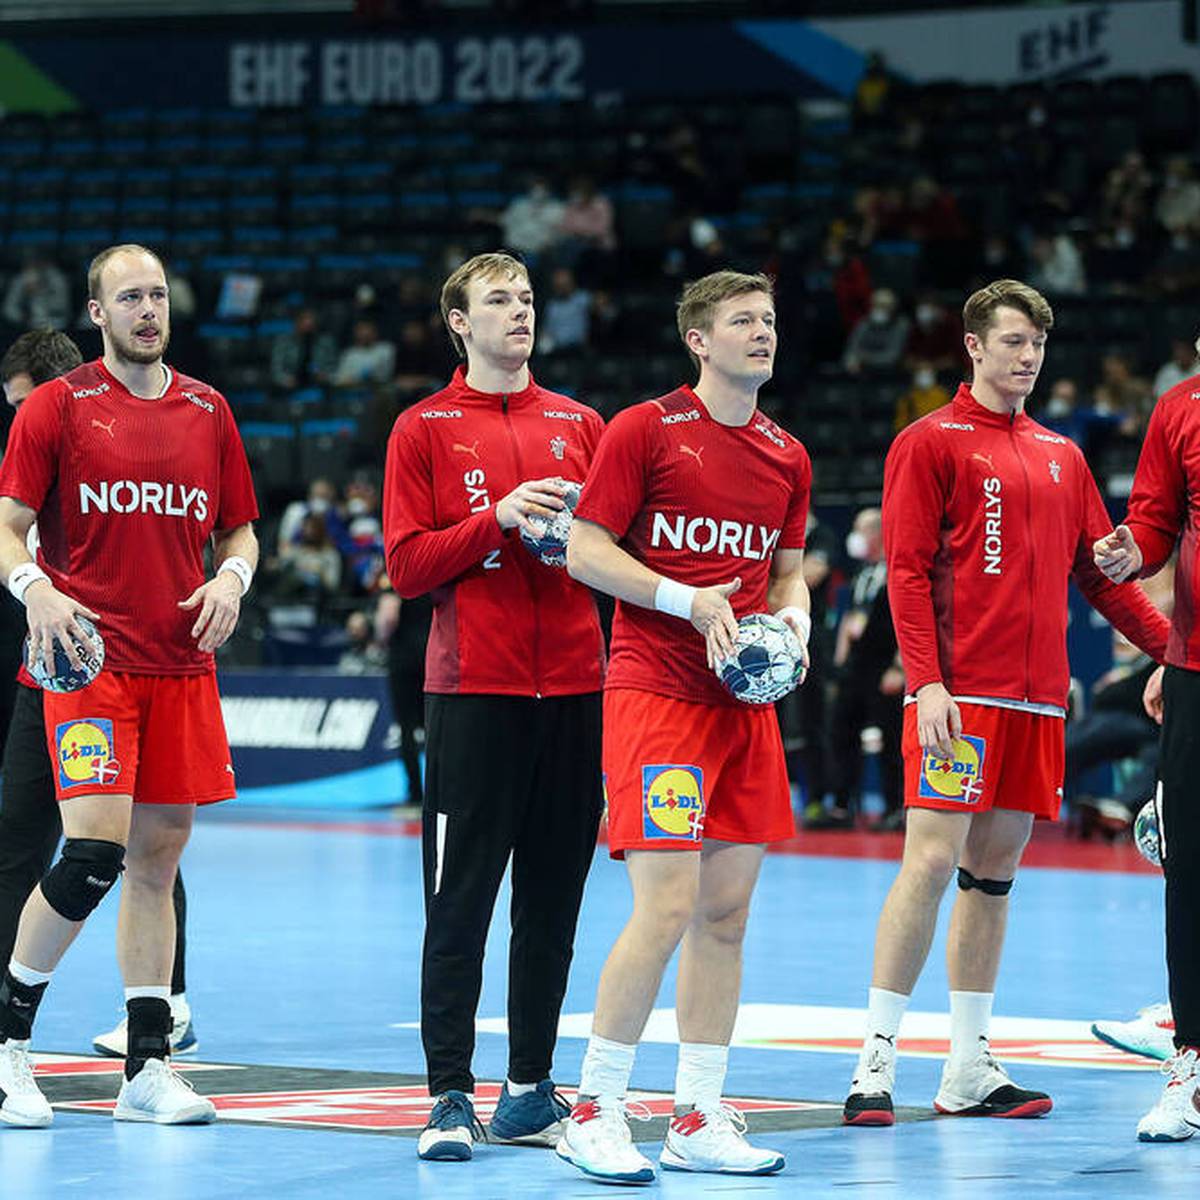 Auf dramatische Art und Weise verpasst Island das Halbfinale bei der Handball-EM. Die Isländer werfen Dänemark Wettbewerbsverzerrung vor, unzählige Spieler erhalten Hassnachrichten.